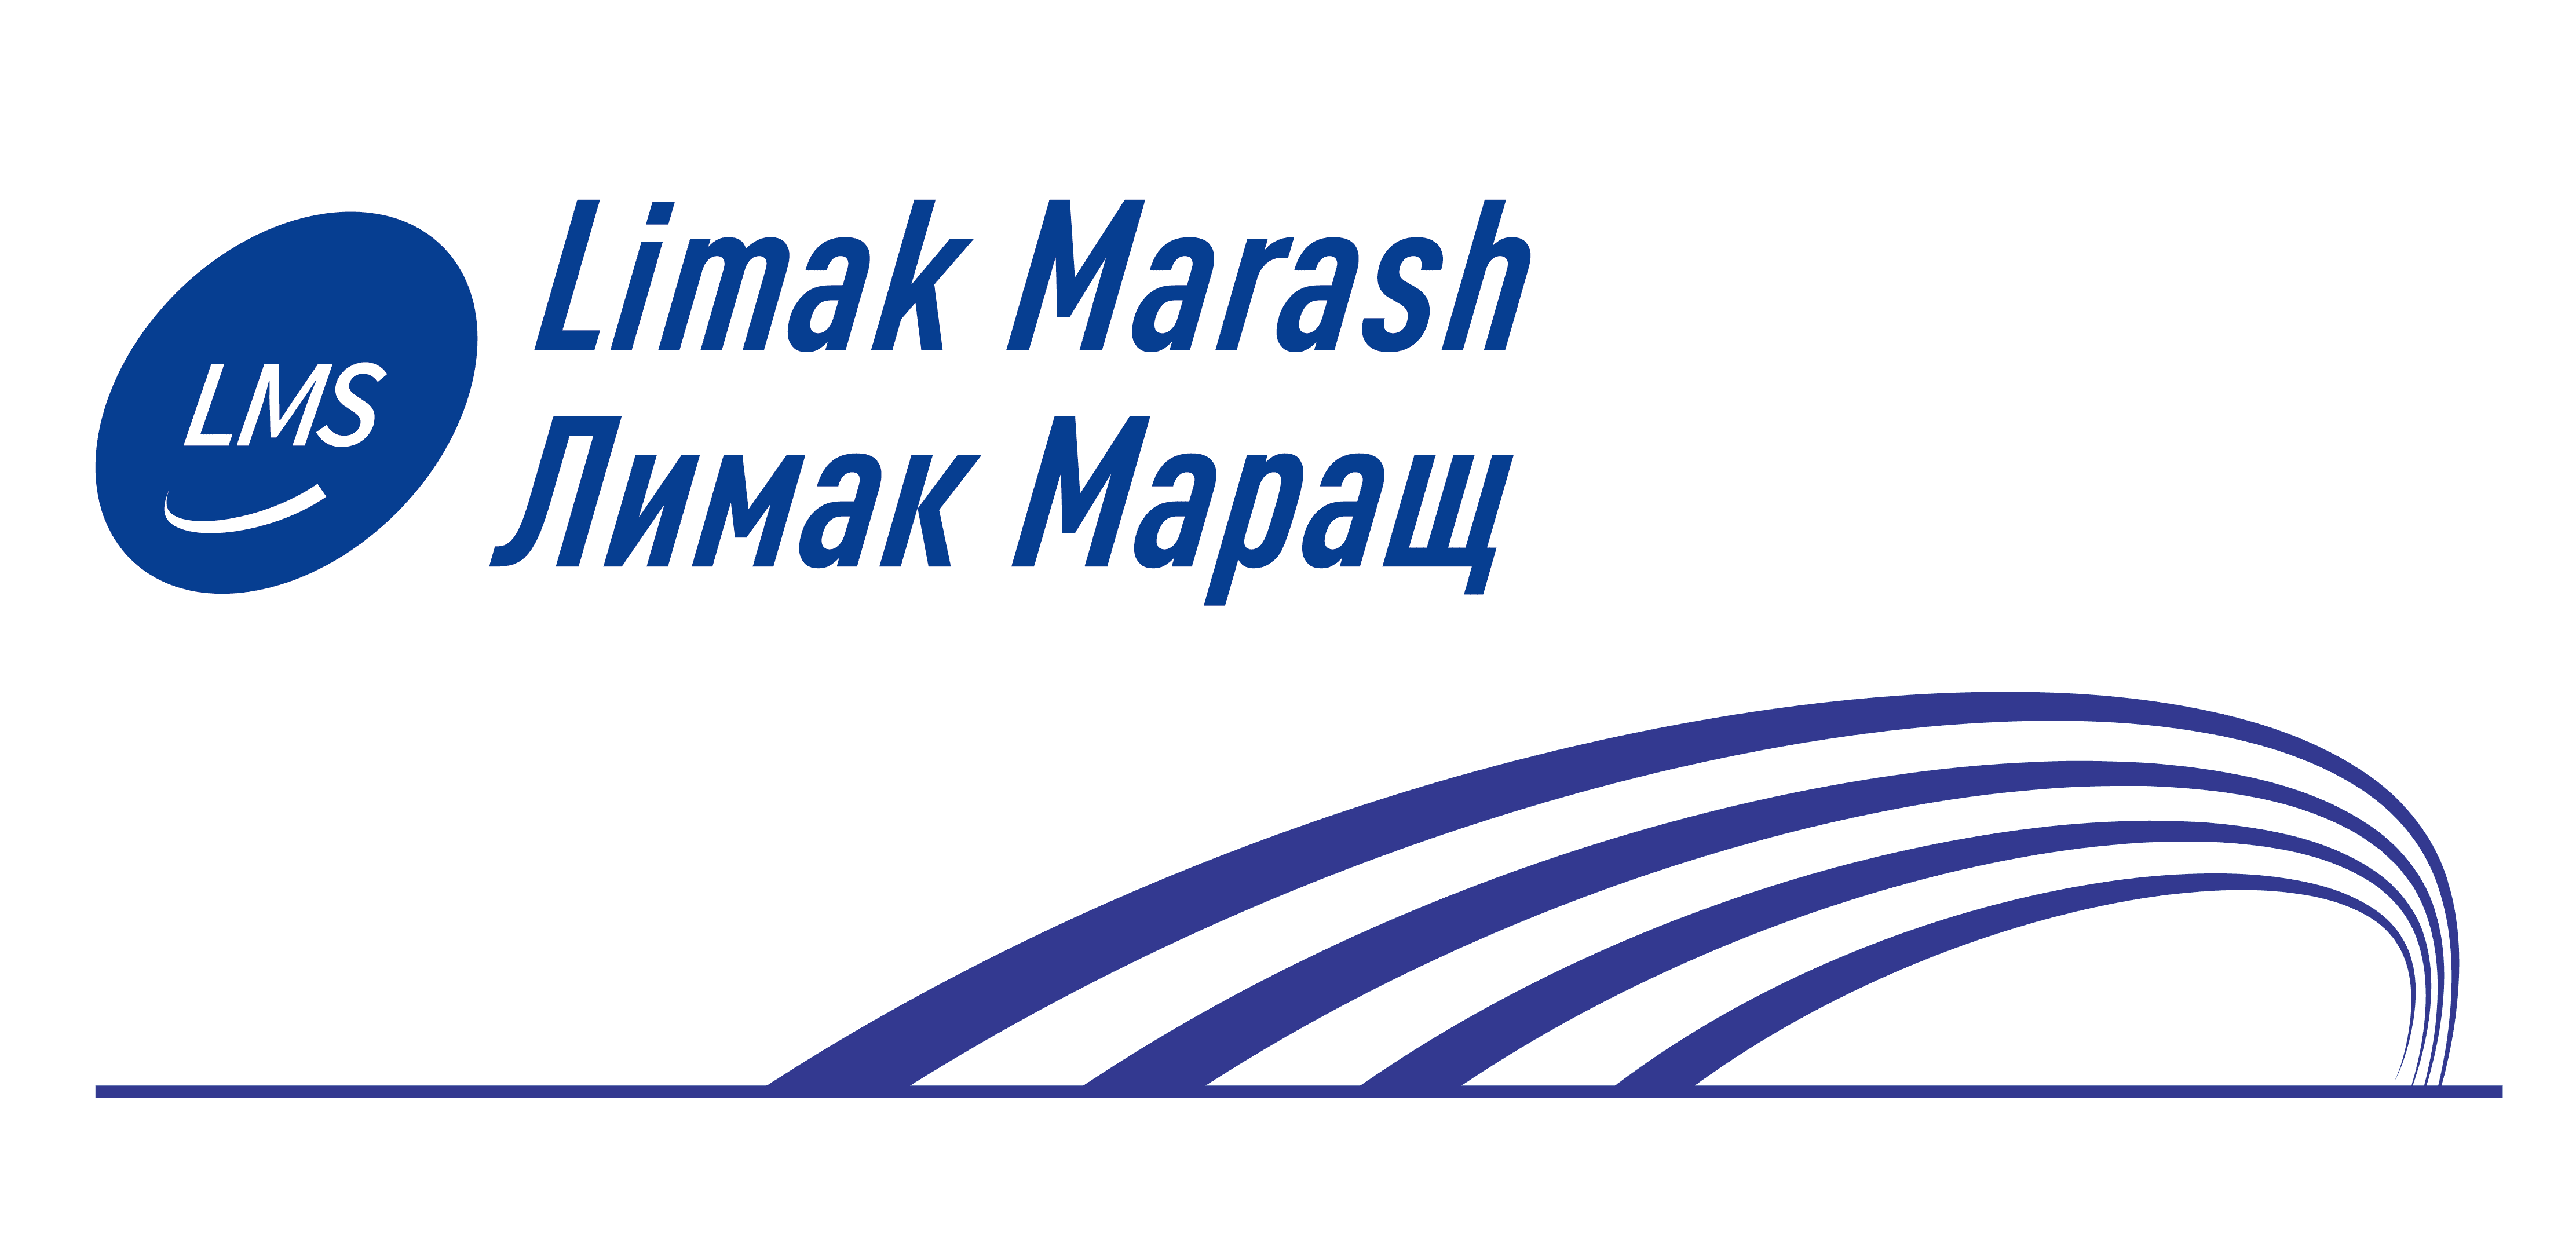 Товарный знак Limak Marash зарегистрирован в Роспатенте